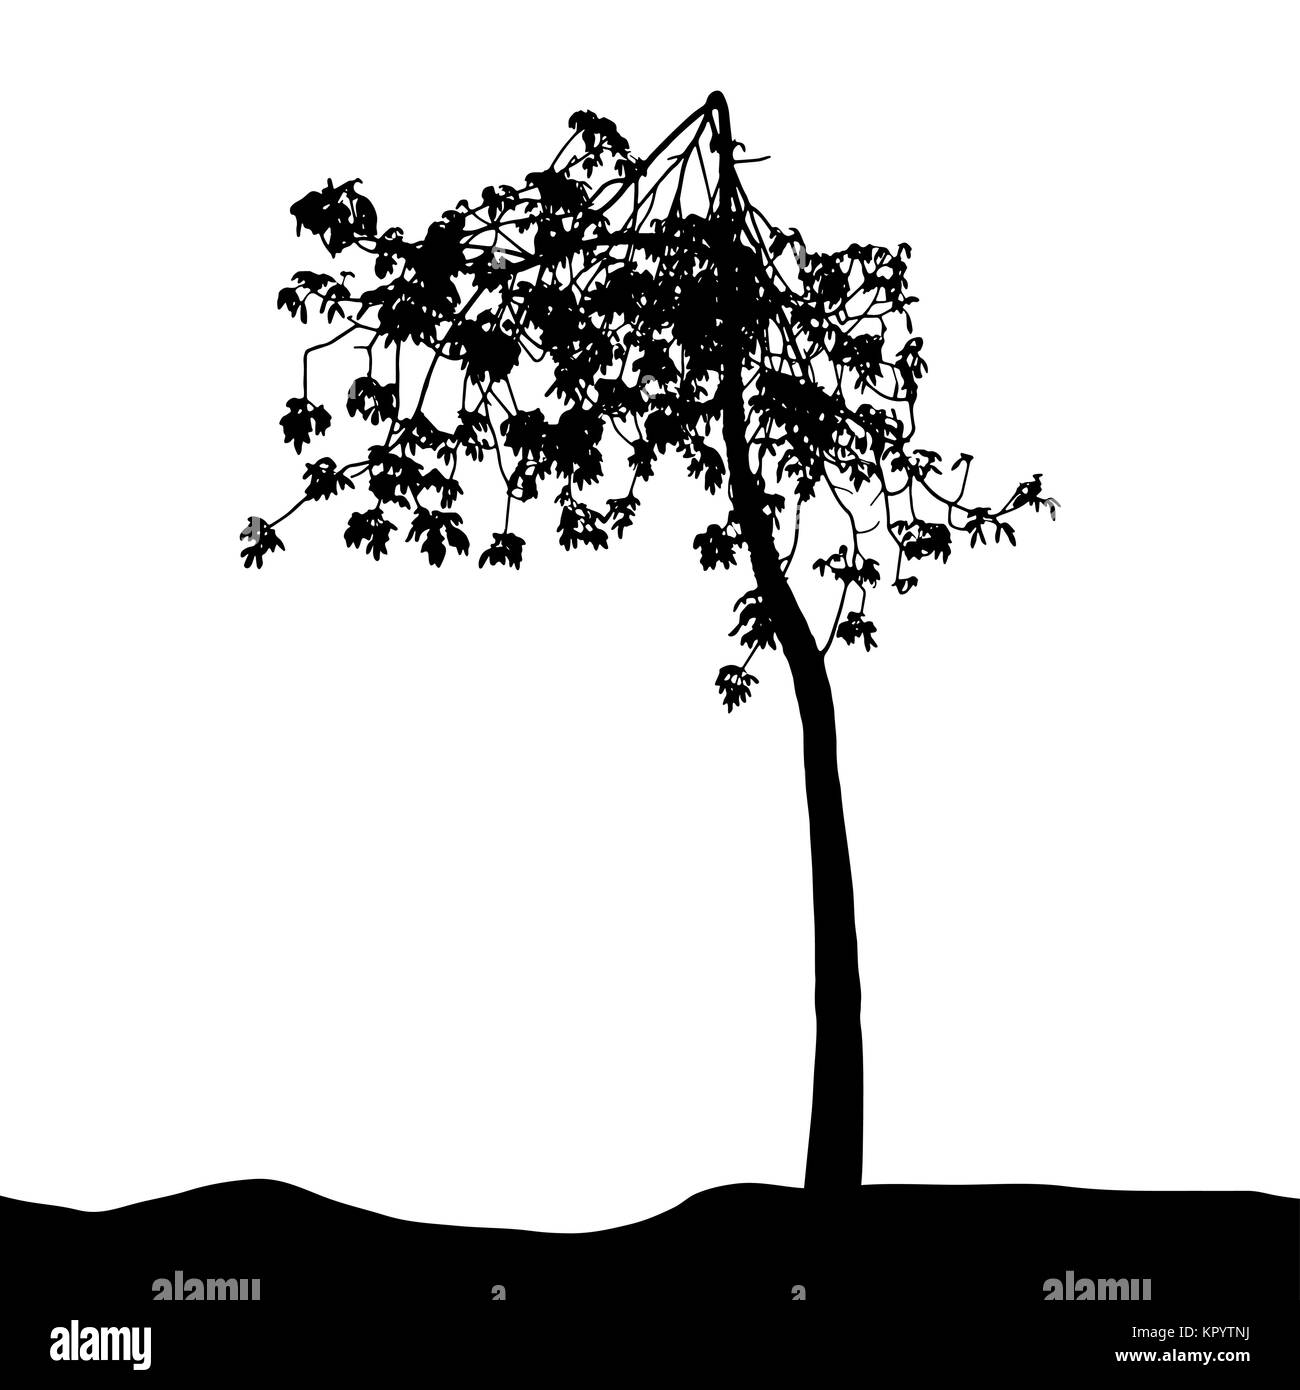 Baum-Silhouette isoliert auf weißem Migrationshintergrund. Vecrtor Illustrati Stock Vektor